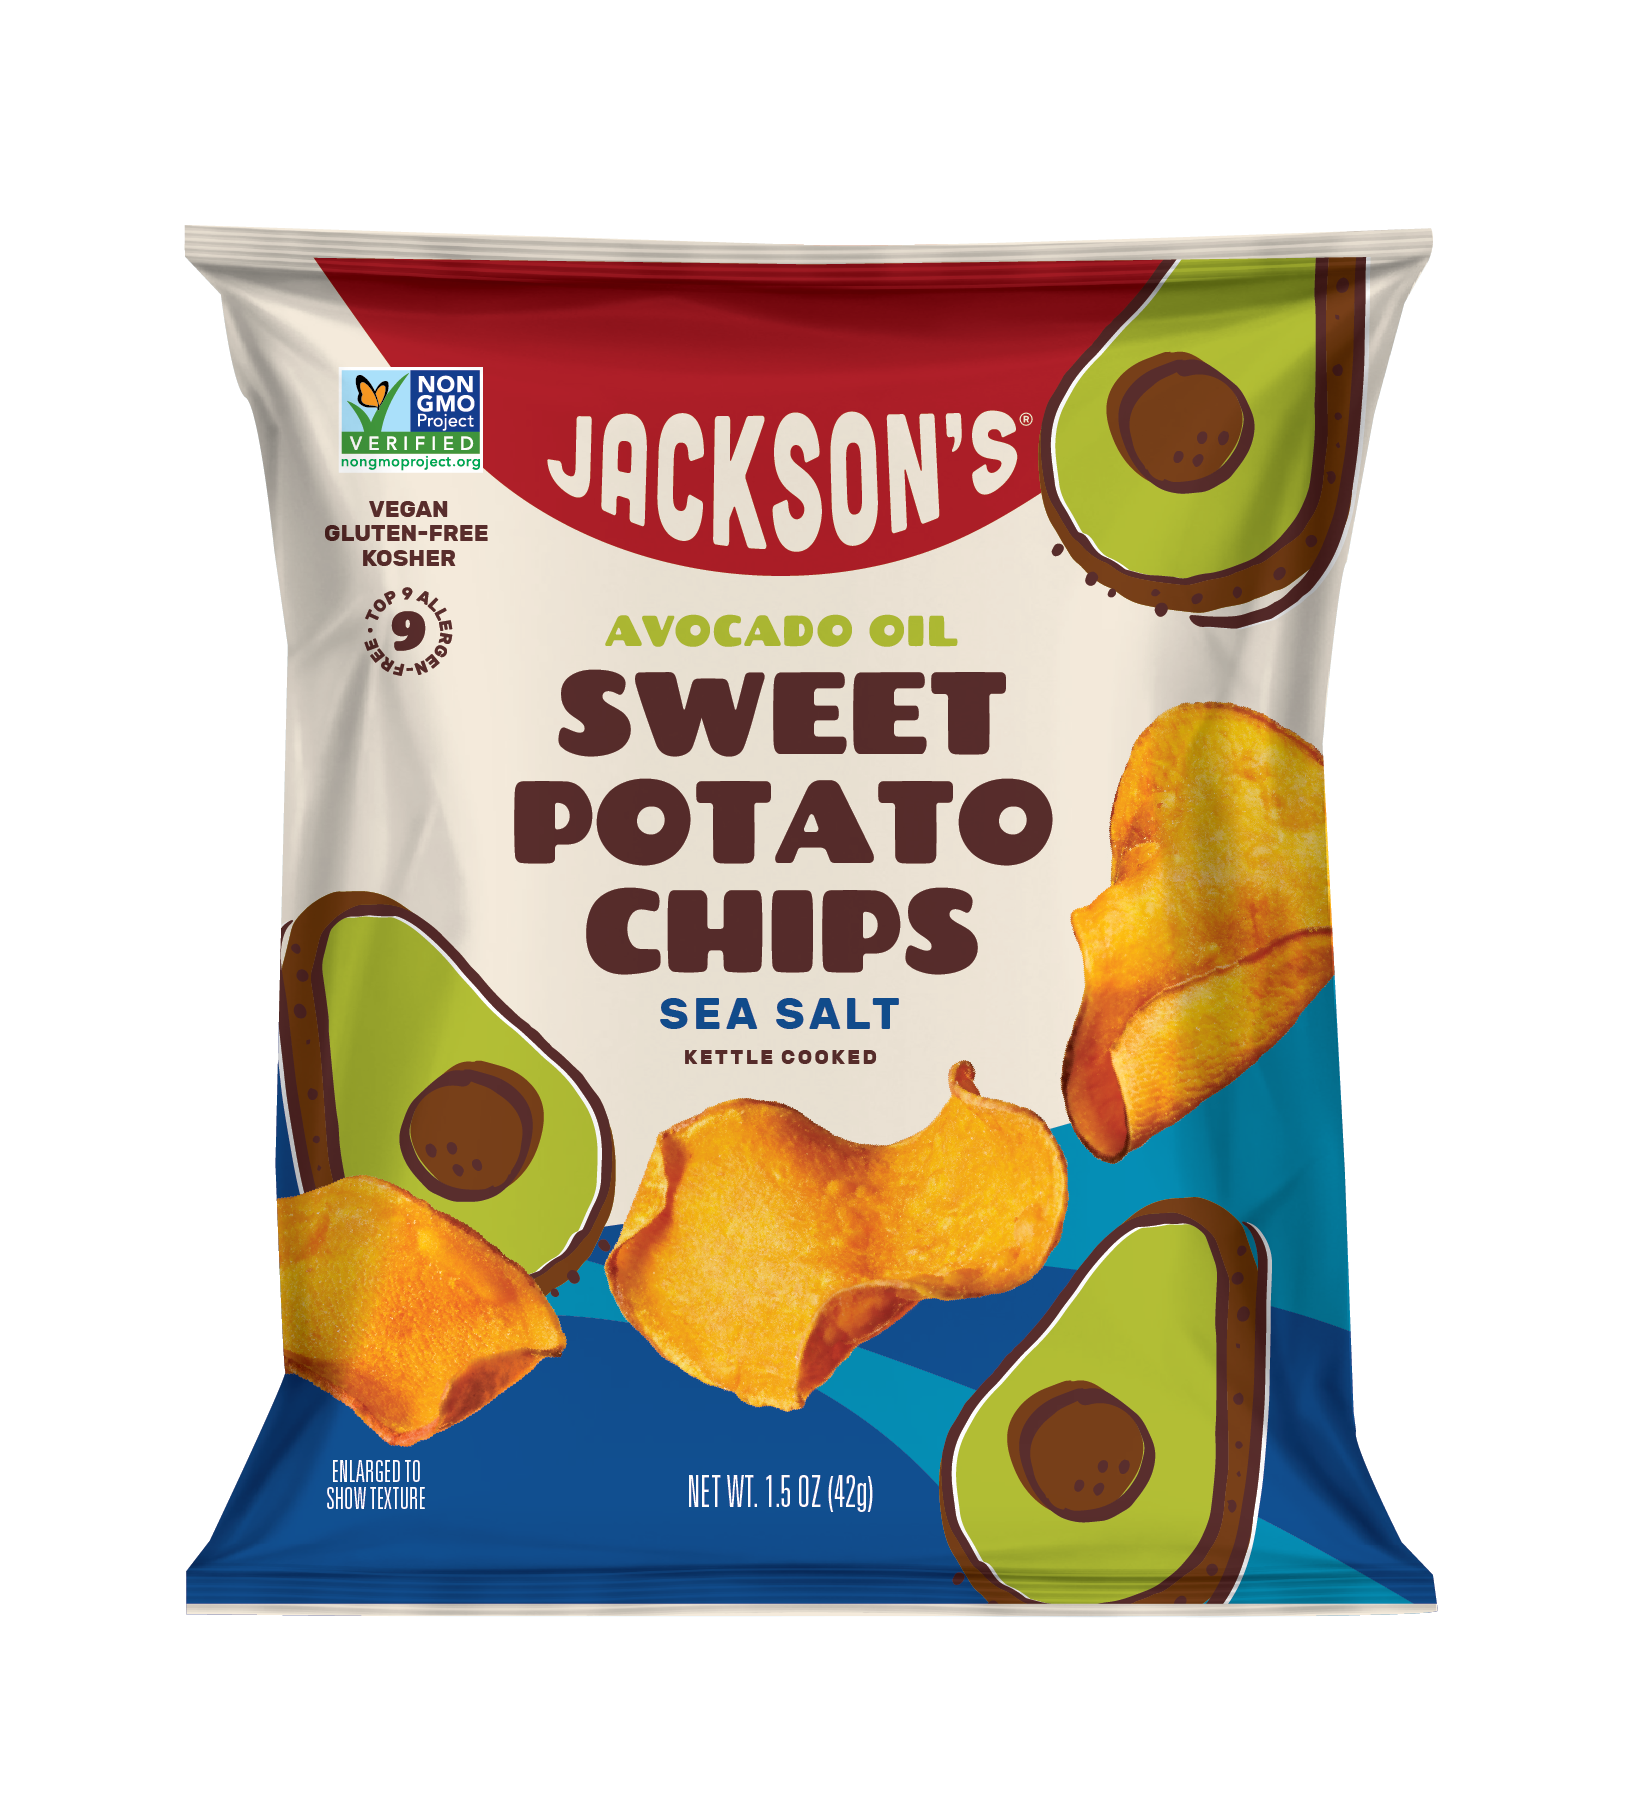 Jackson's Sea Salt Sweet Potato Chips with Avocado Oil - 1.5 OZ